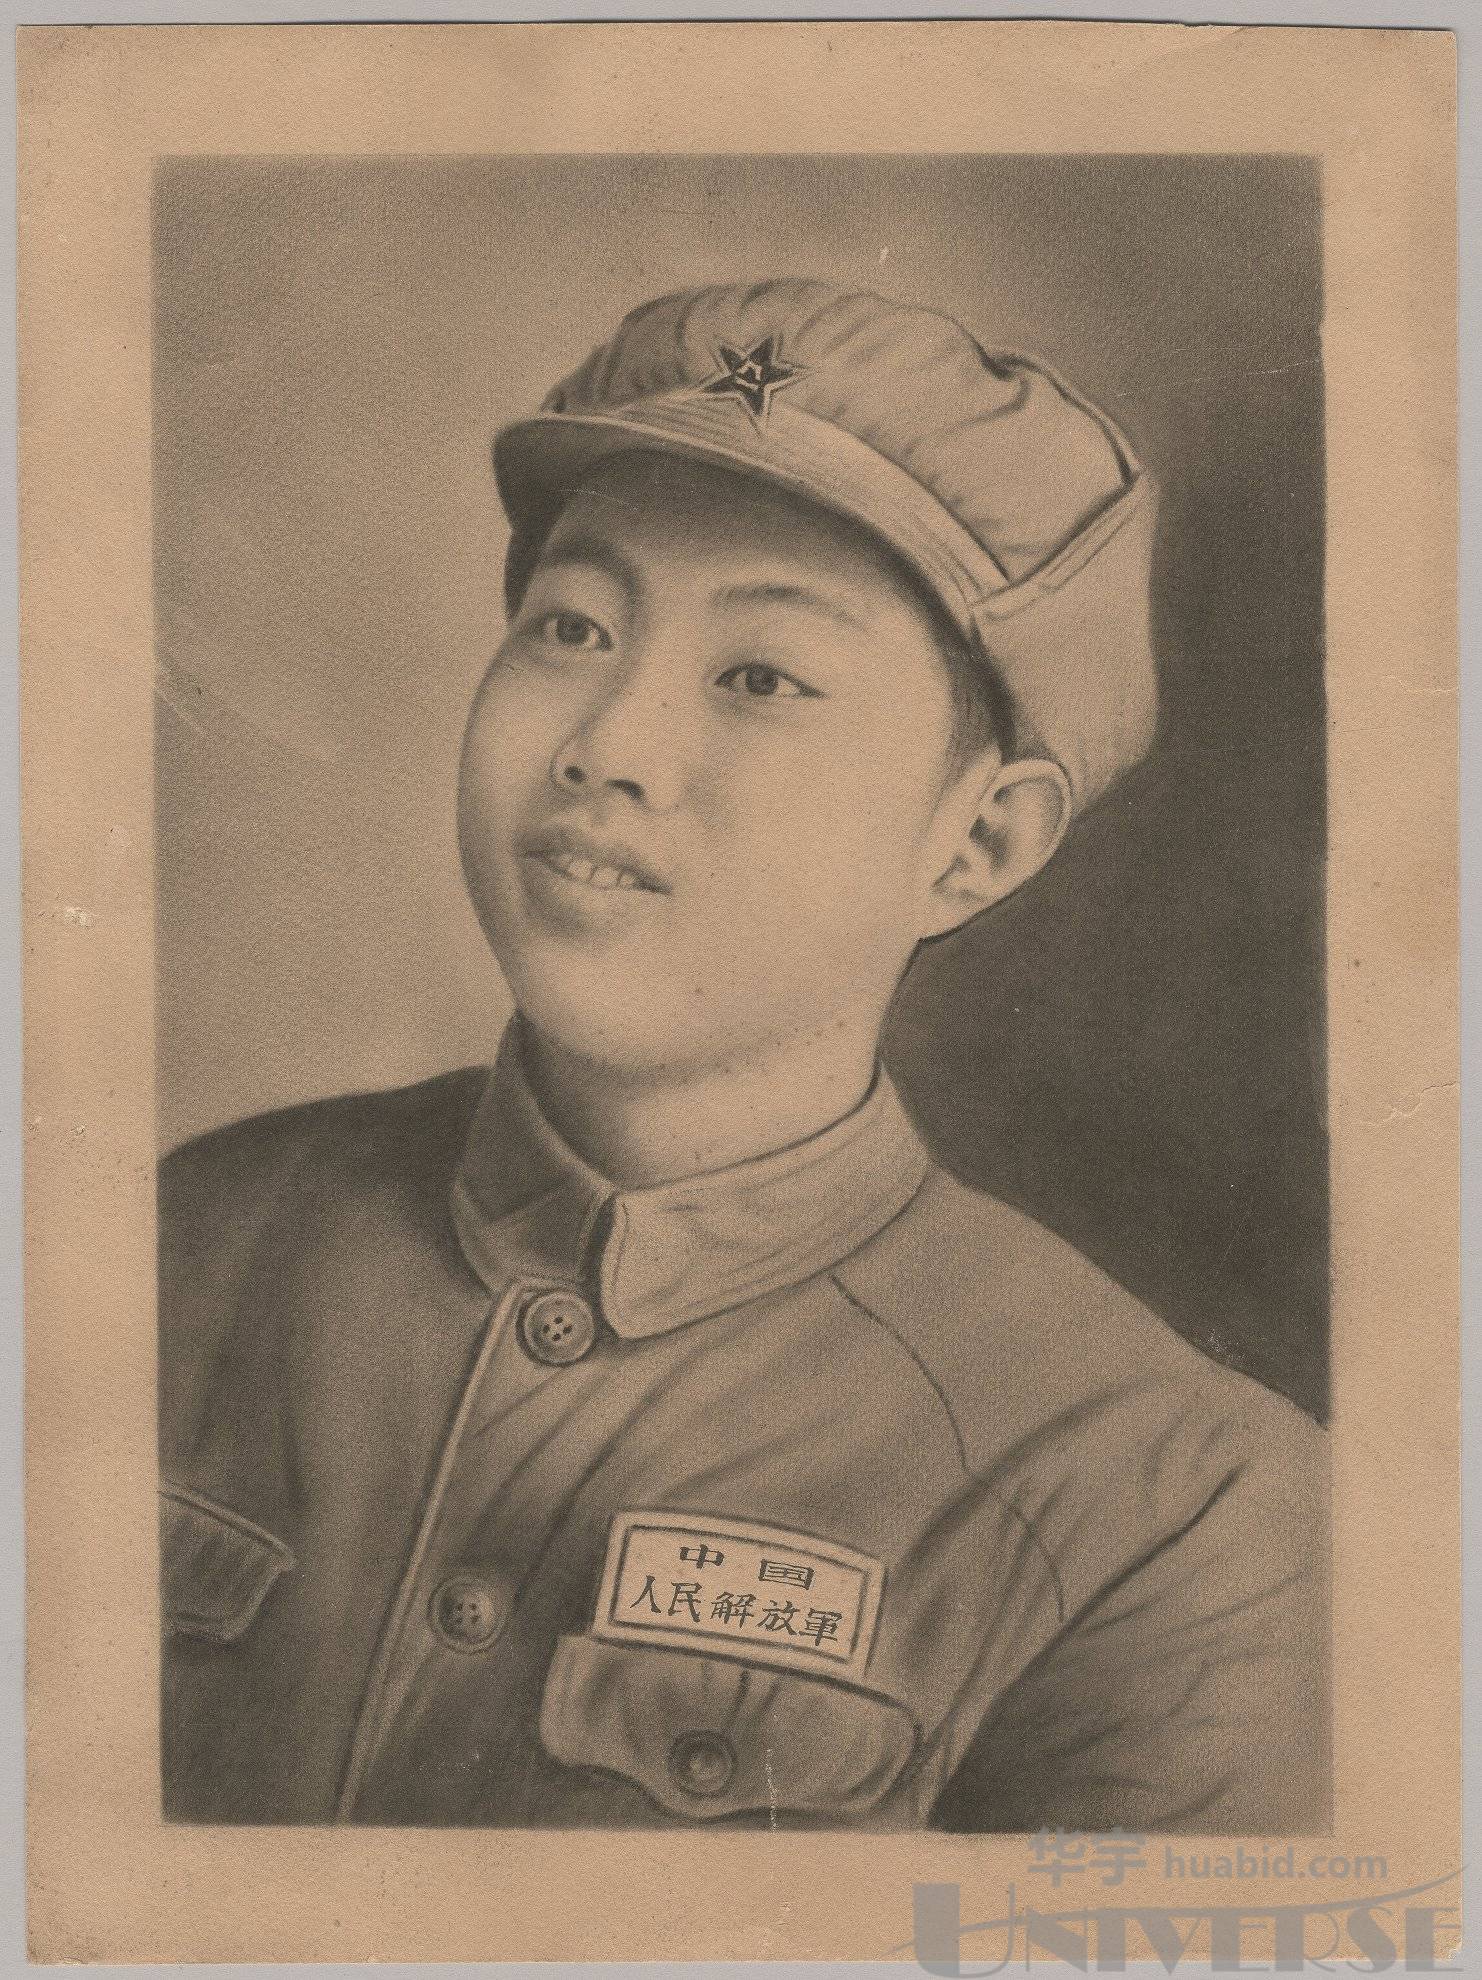 新中国早期中国人民解放军战士肖像手绘素描画一幅,尺寸:22×29.5cm.